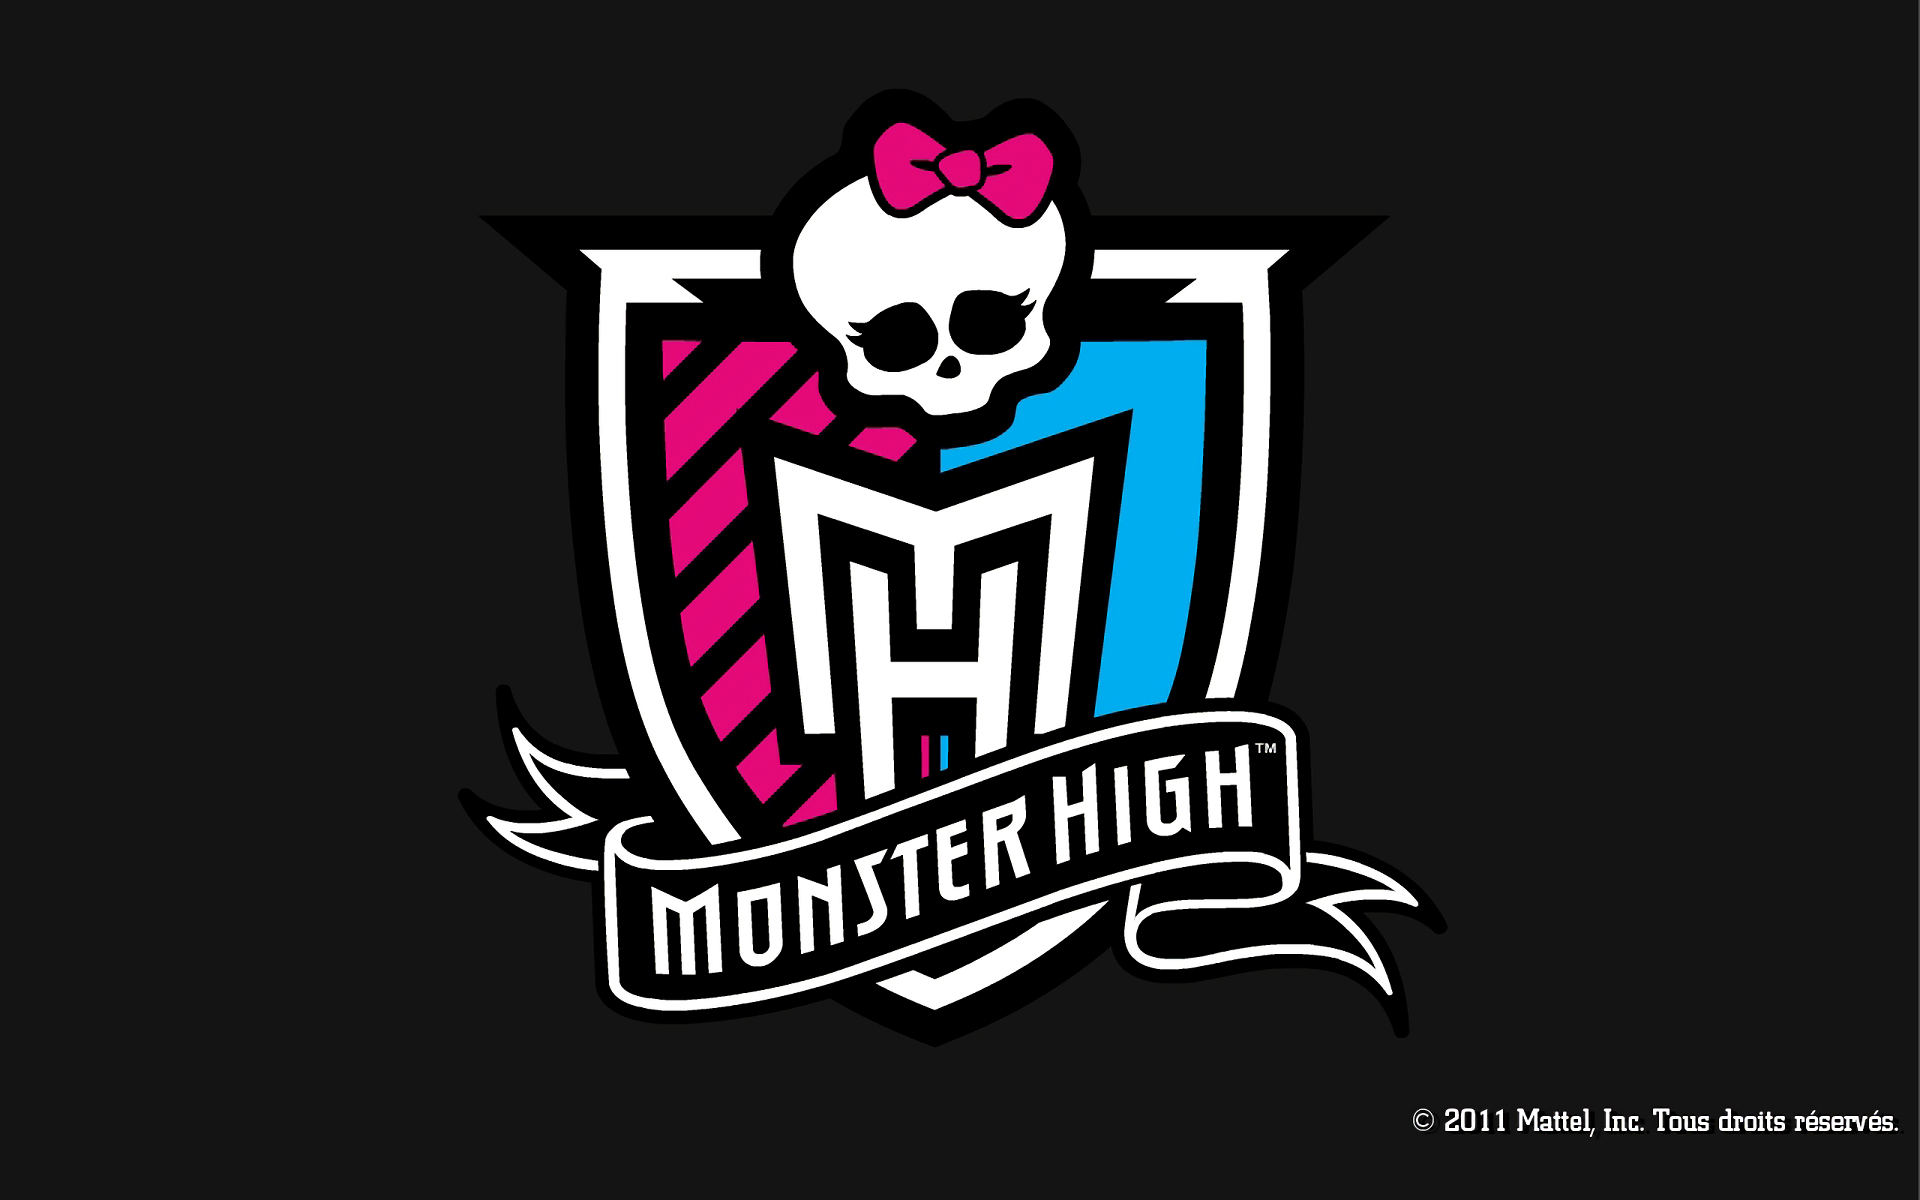 TV Show Monster High HD Wallpaper